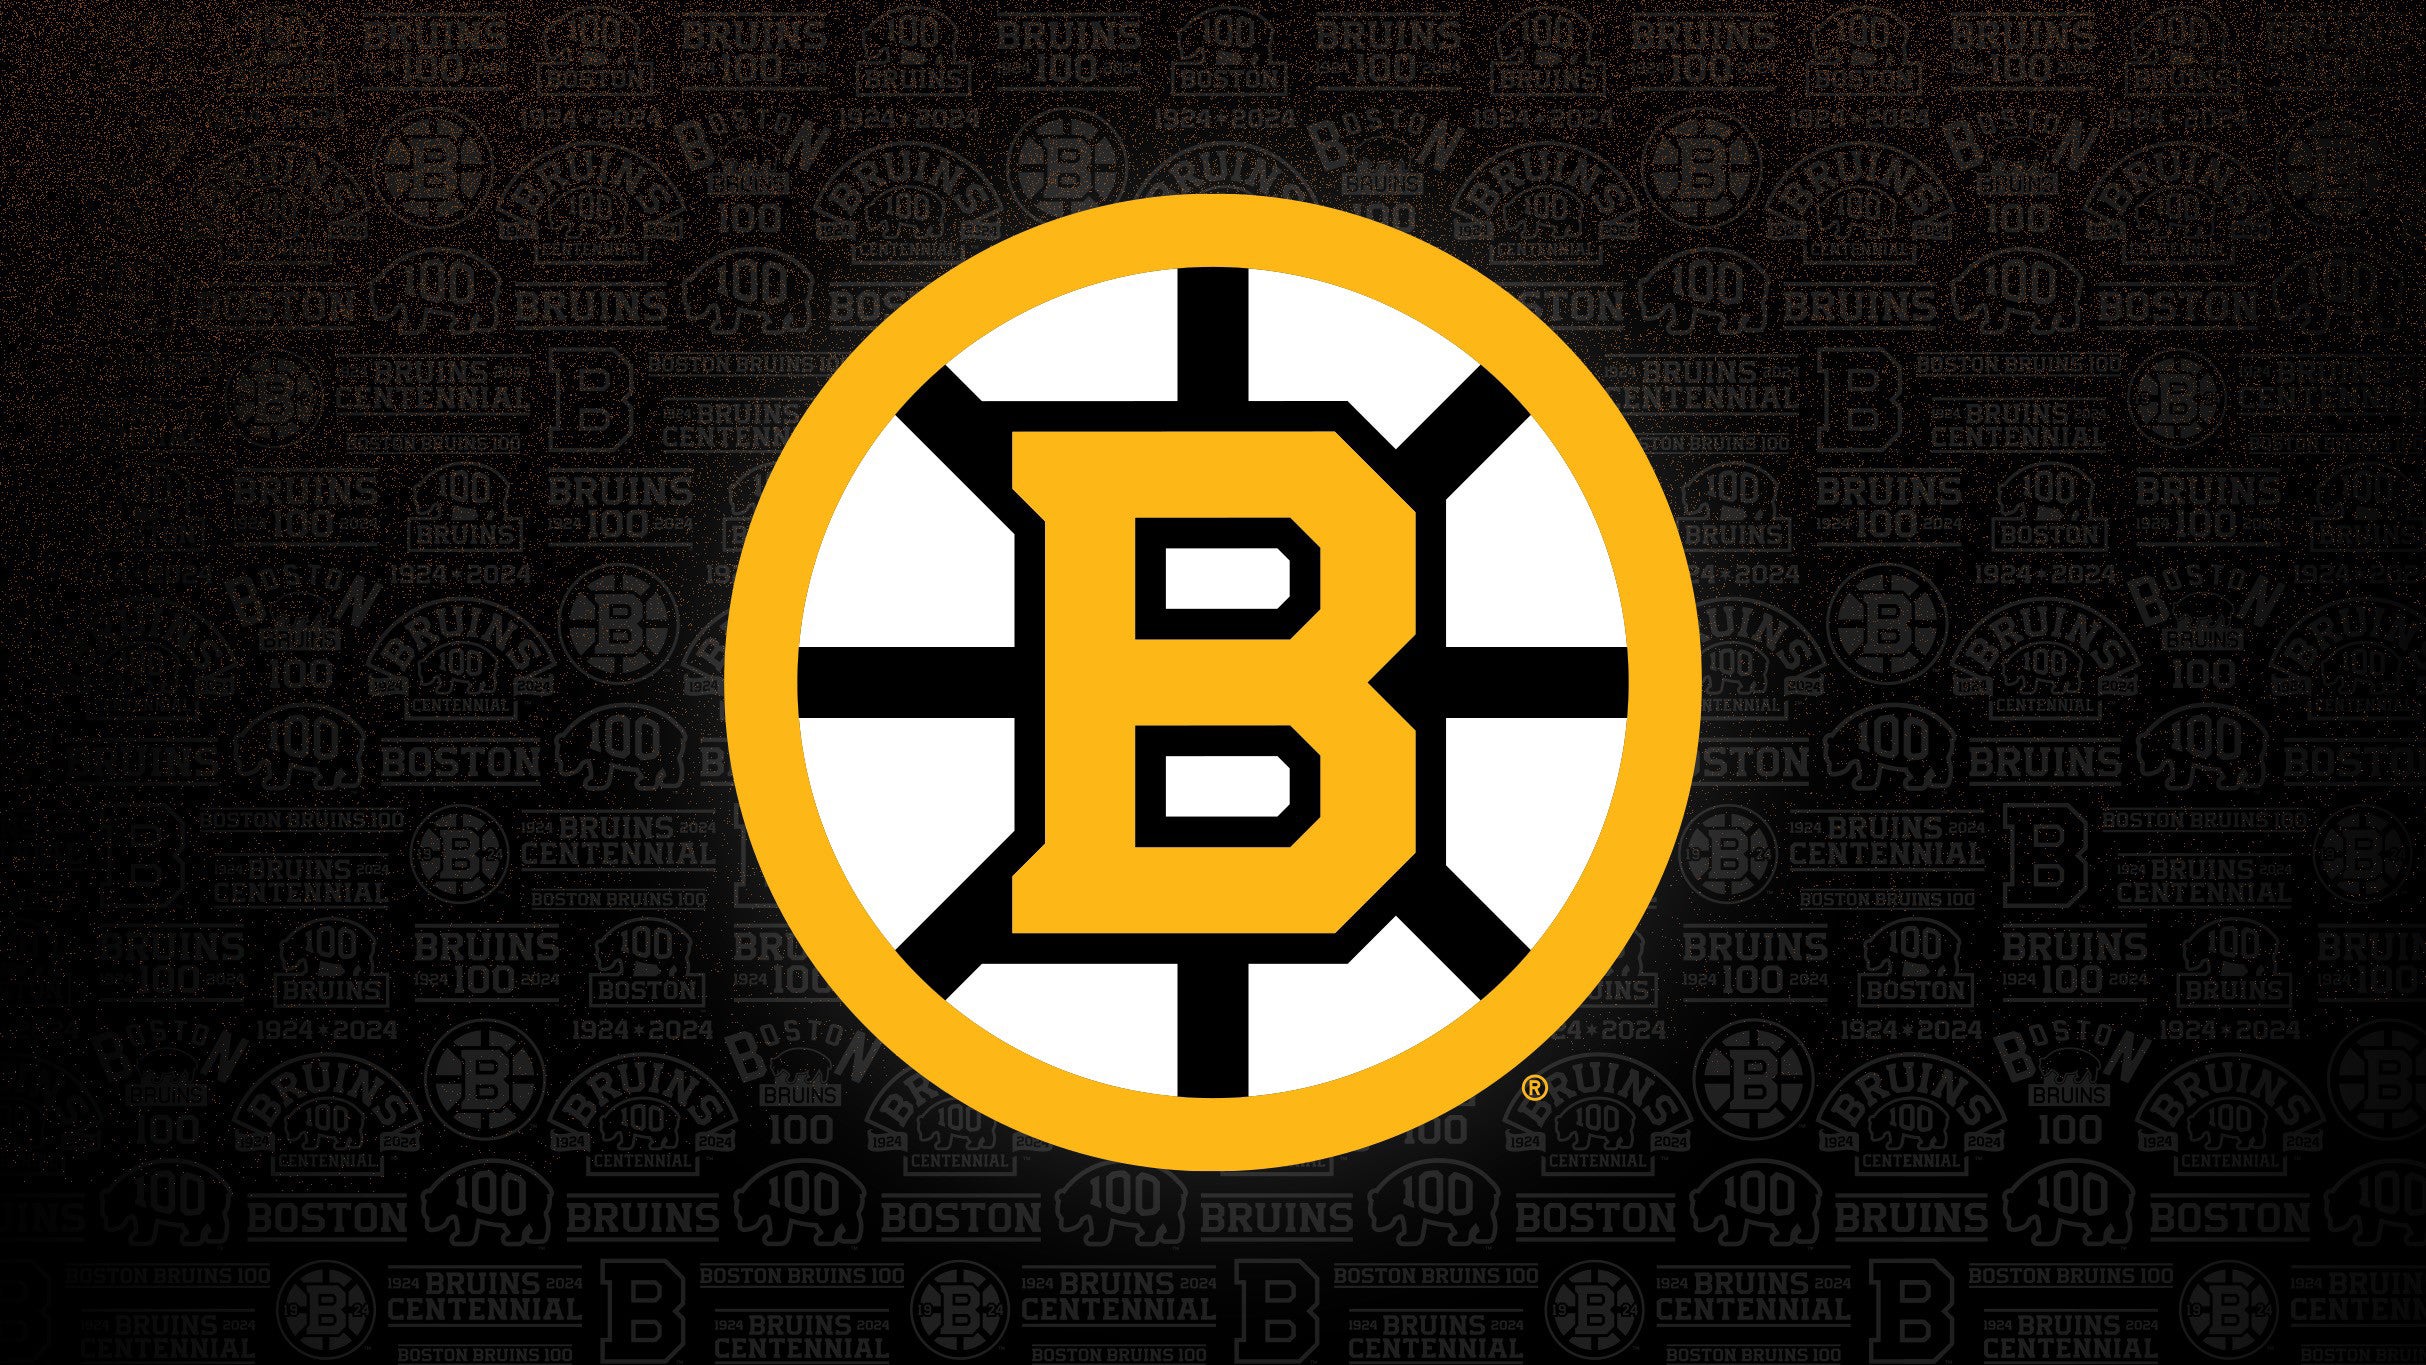 Boston Bruins vs. Detroit Red Wings